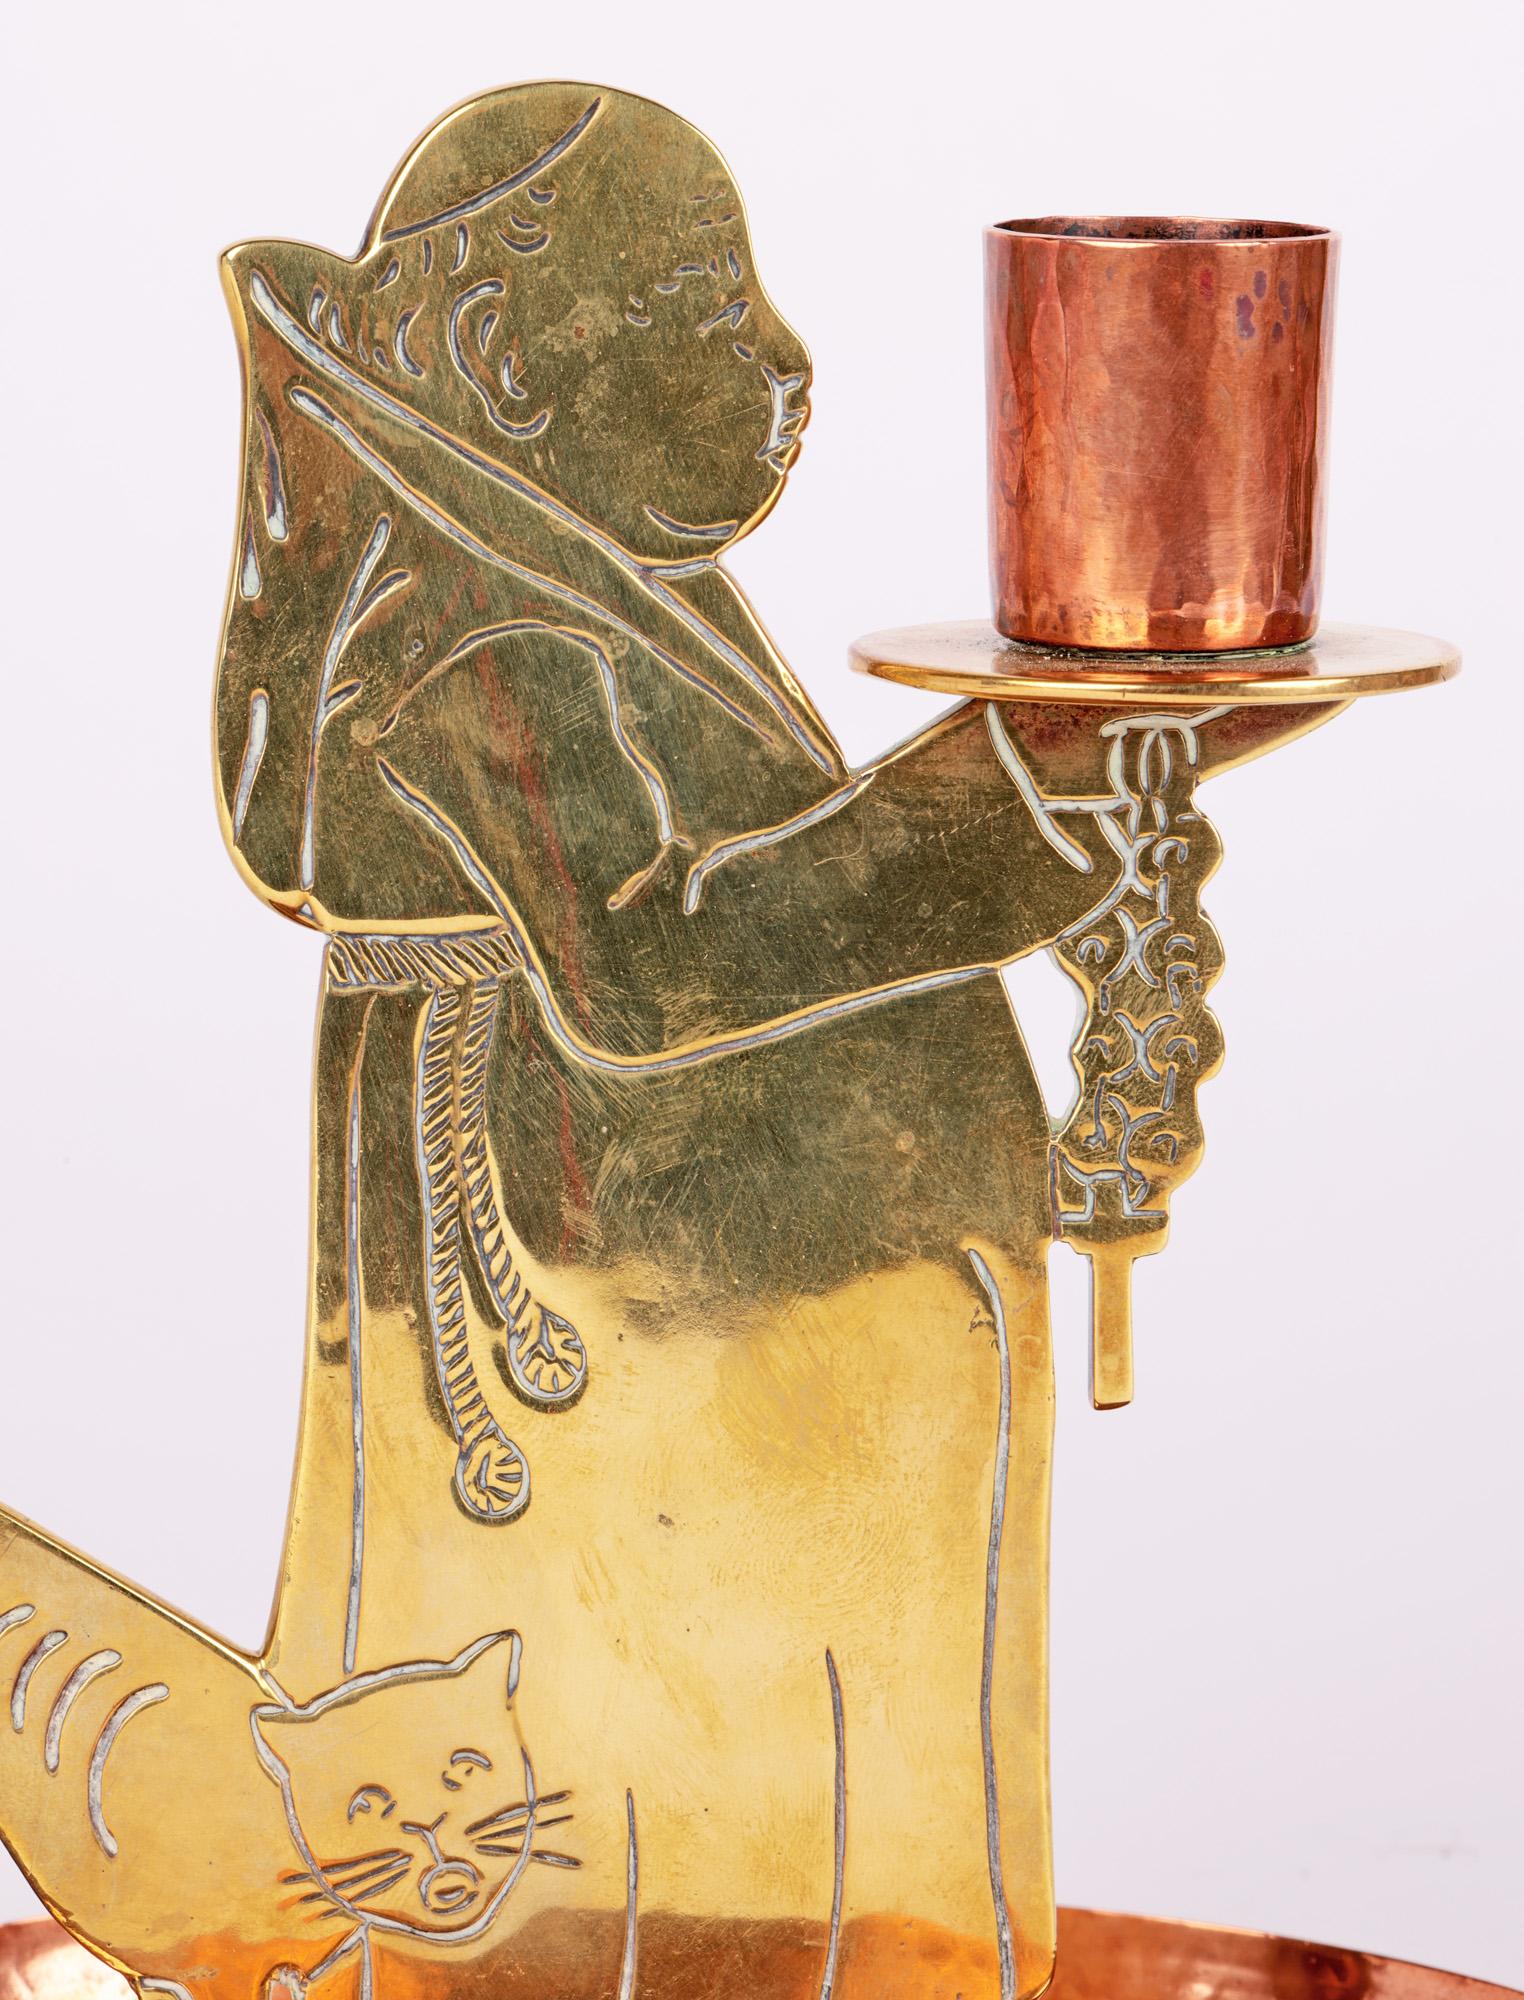 Ein sehr stilvolles Jugendstil-Kammerstäbchen aus Kupfer und Messing von der renommierten WMF (Württembergische Metallwarenfabrik) aus der Zeit um 1905. Der Kammerständer steht auf einem ovalen Kupfersockel mit erhöhtem Rand und ist mit einem